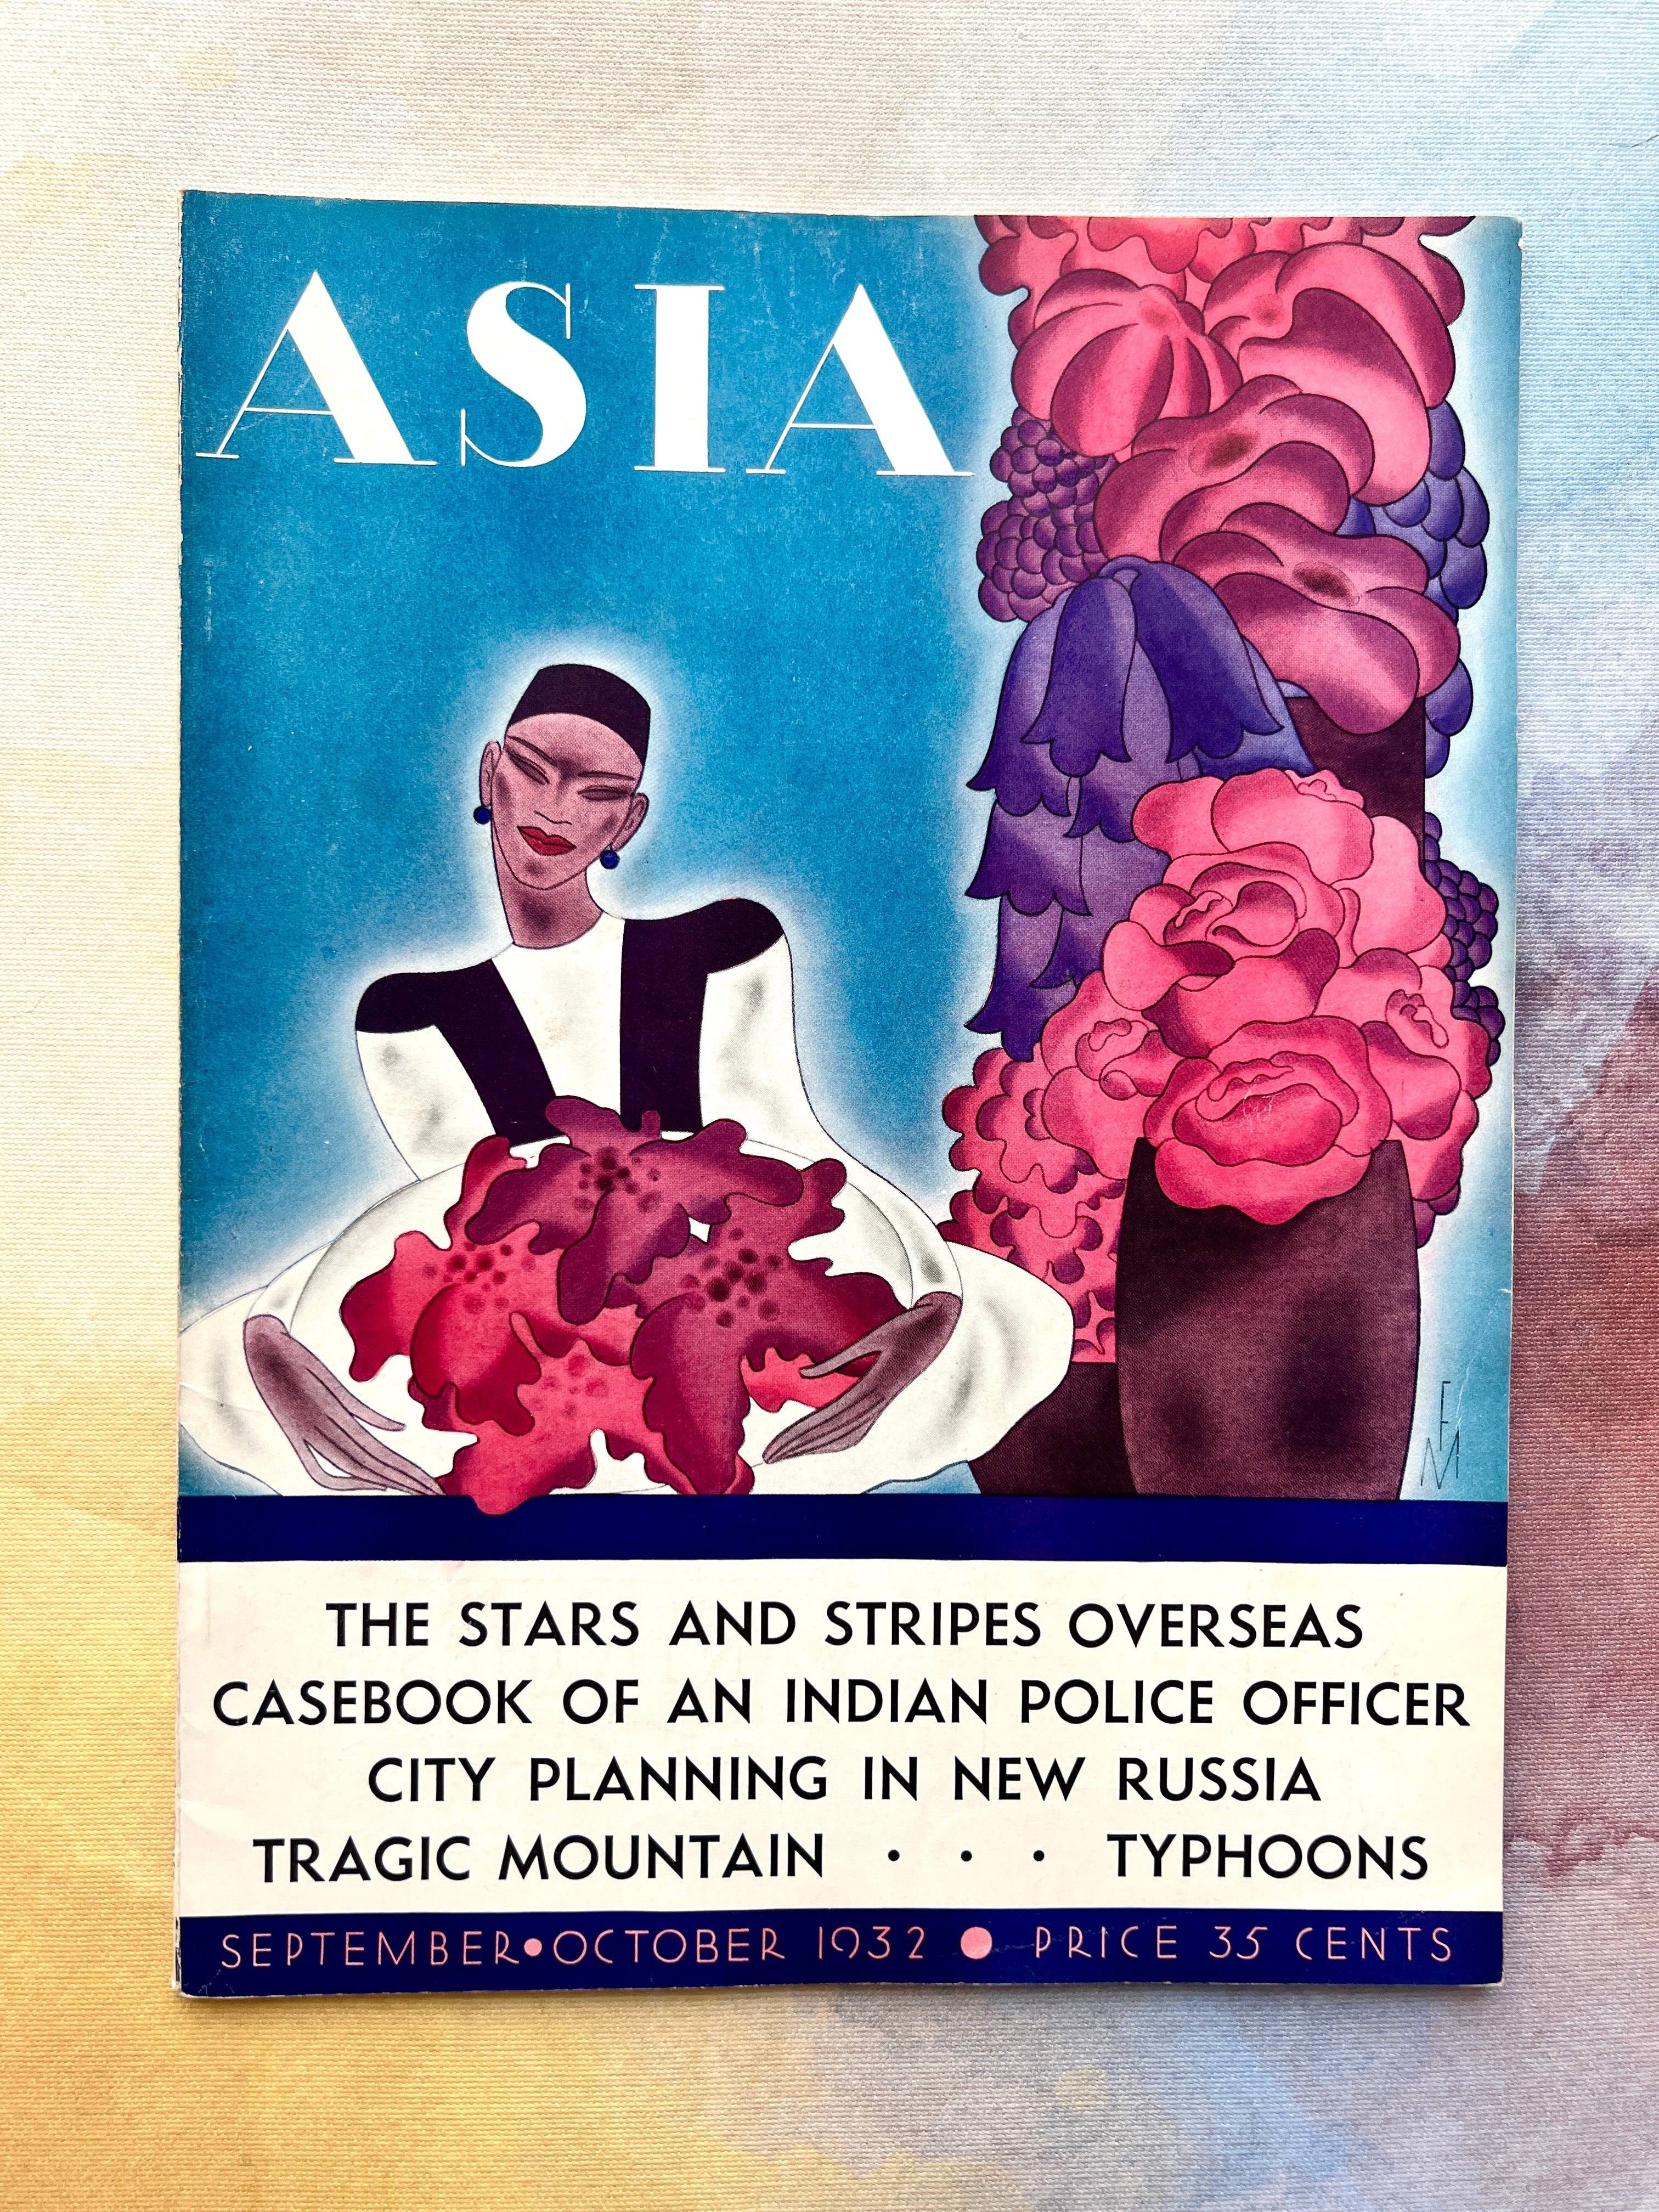 Asia Magazine September-October 1932 Issue